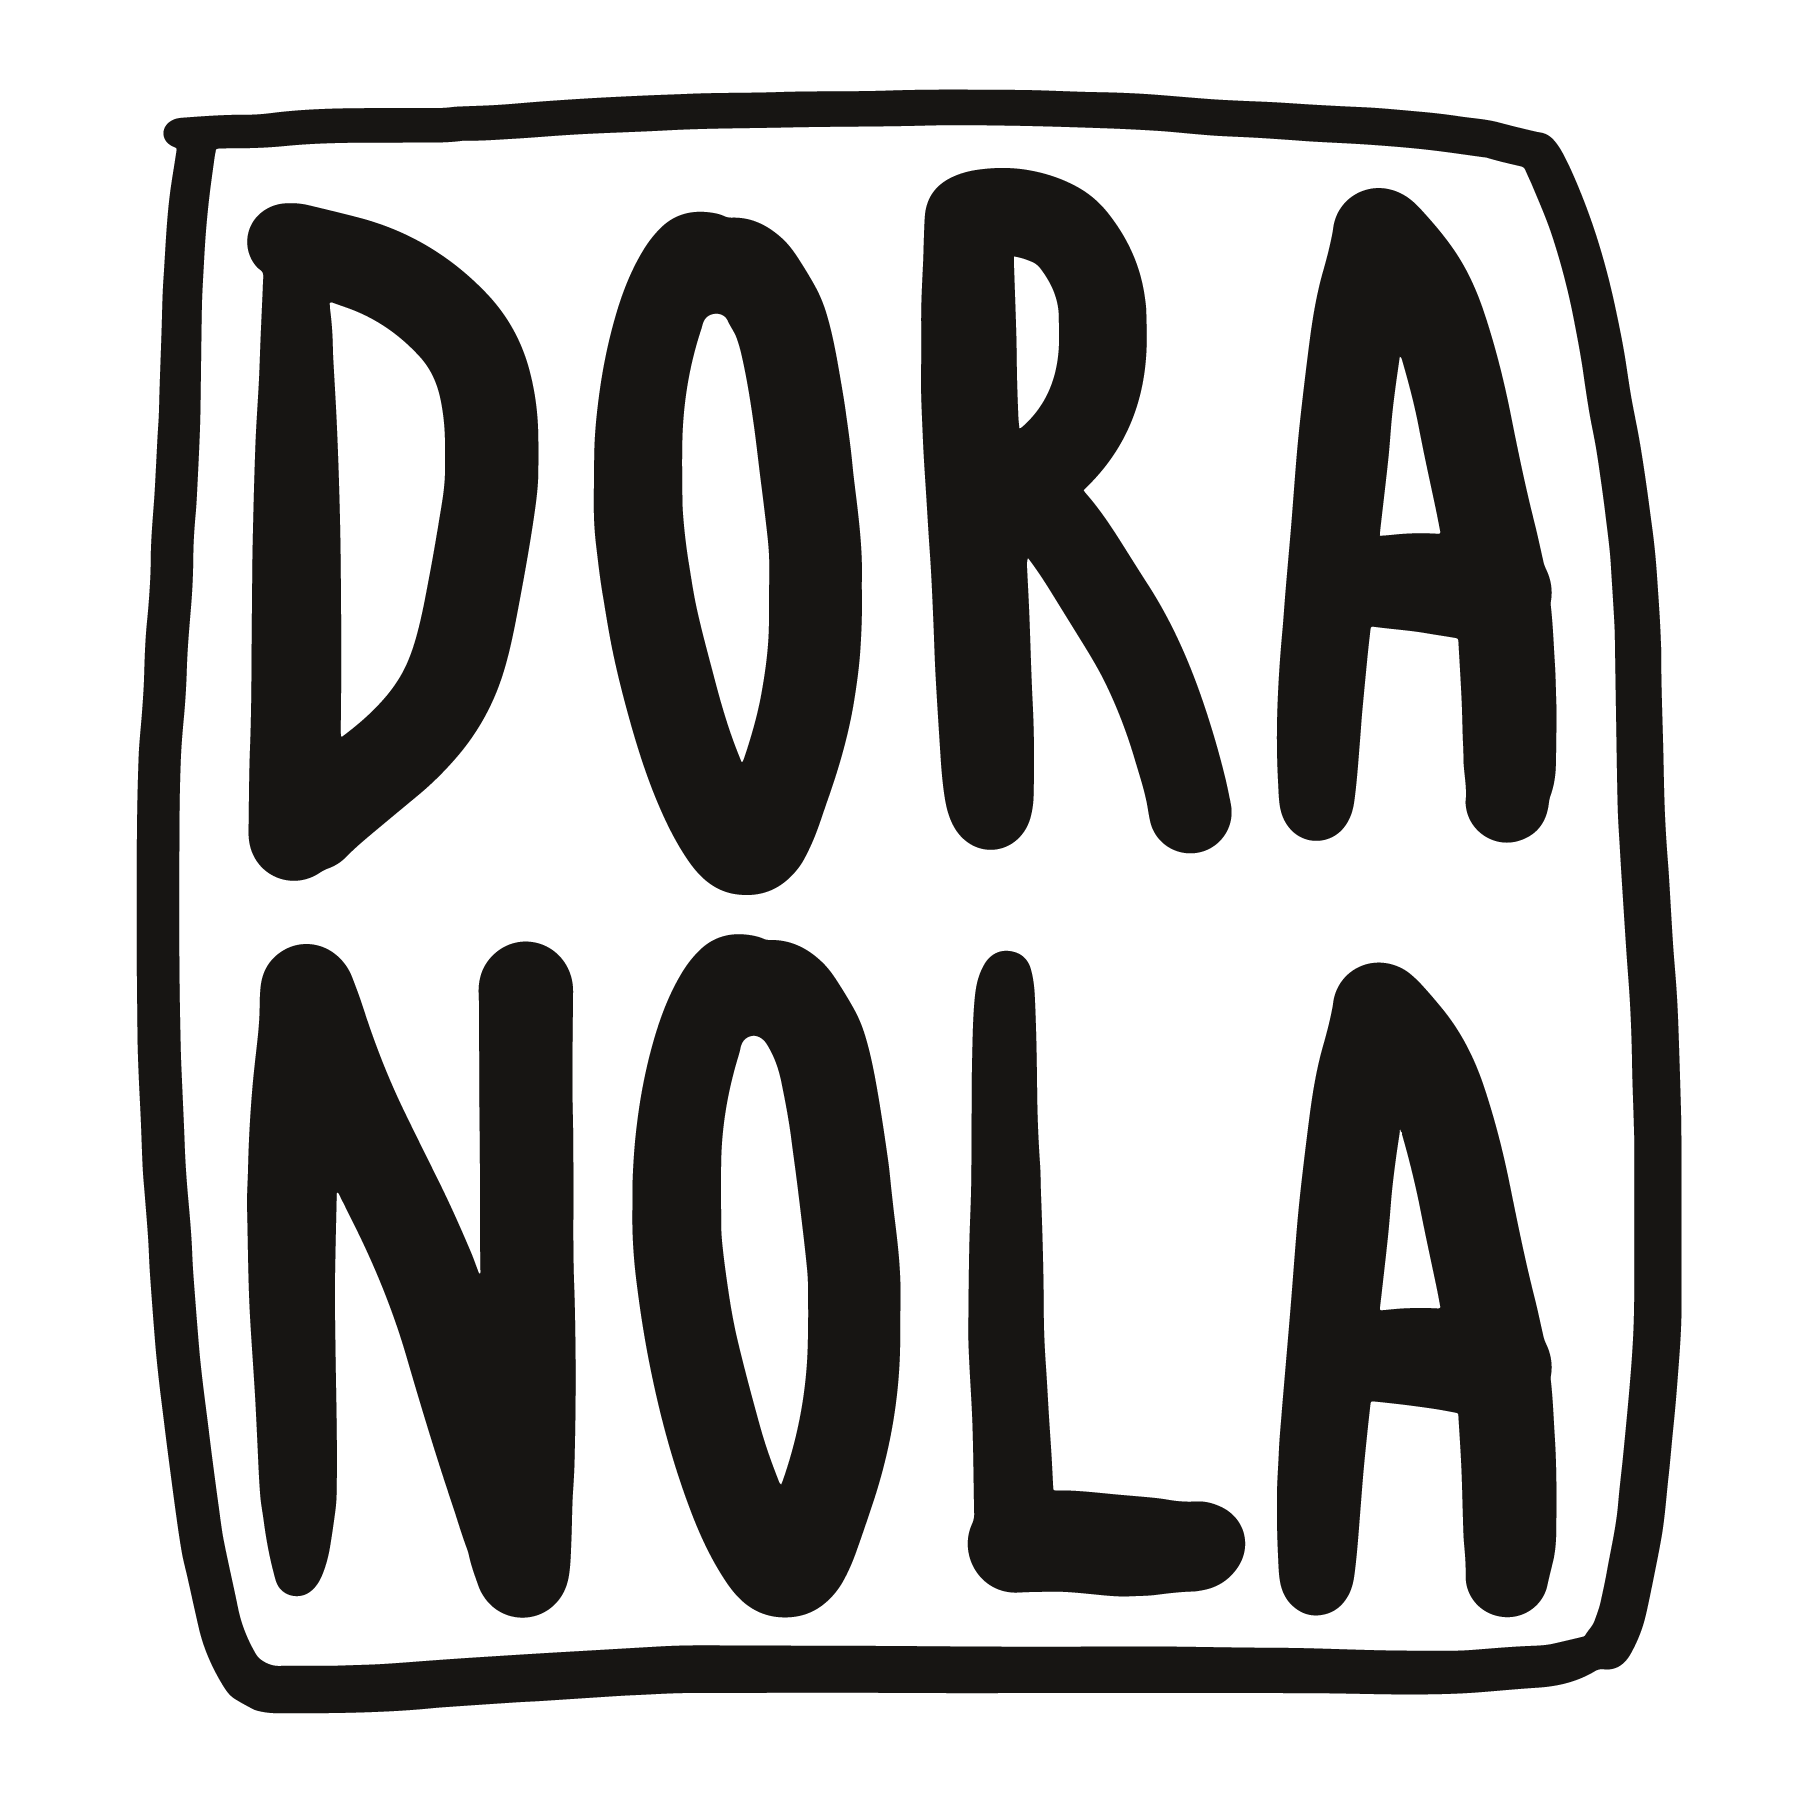 DORA NOLA logo